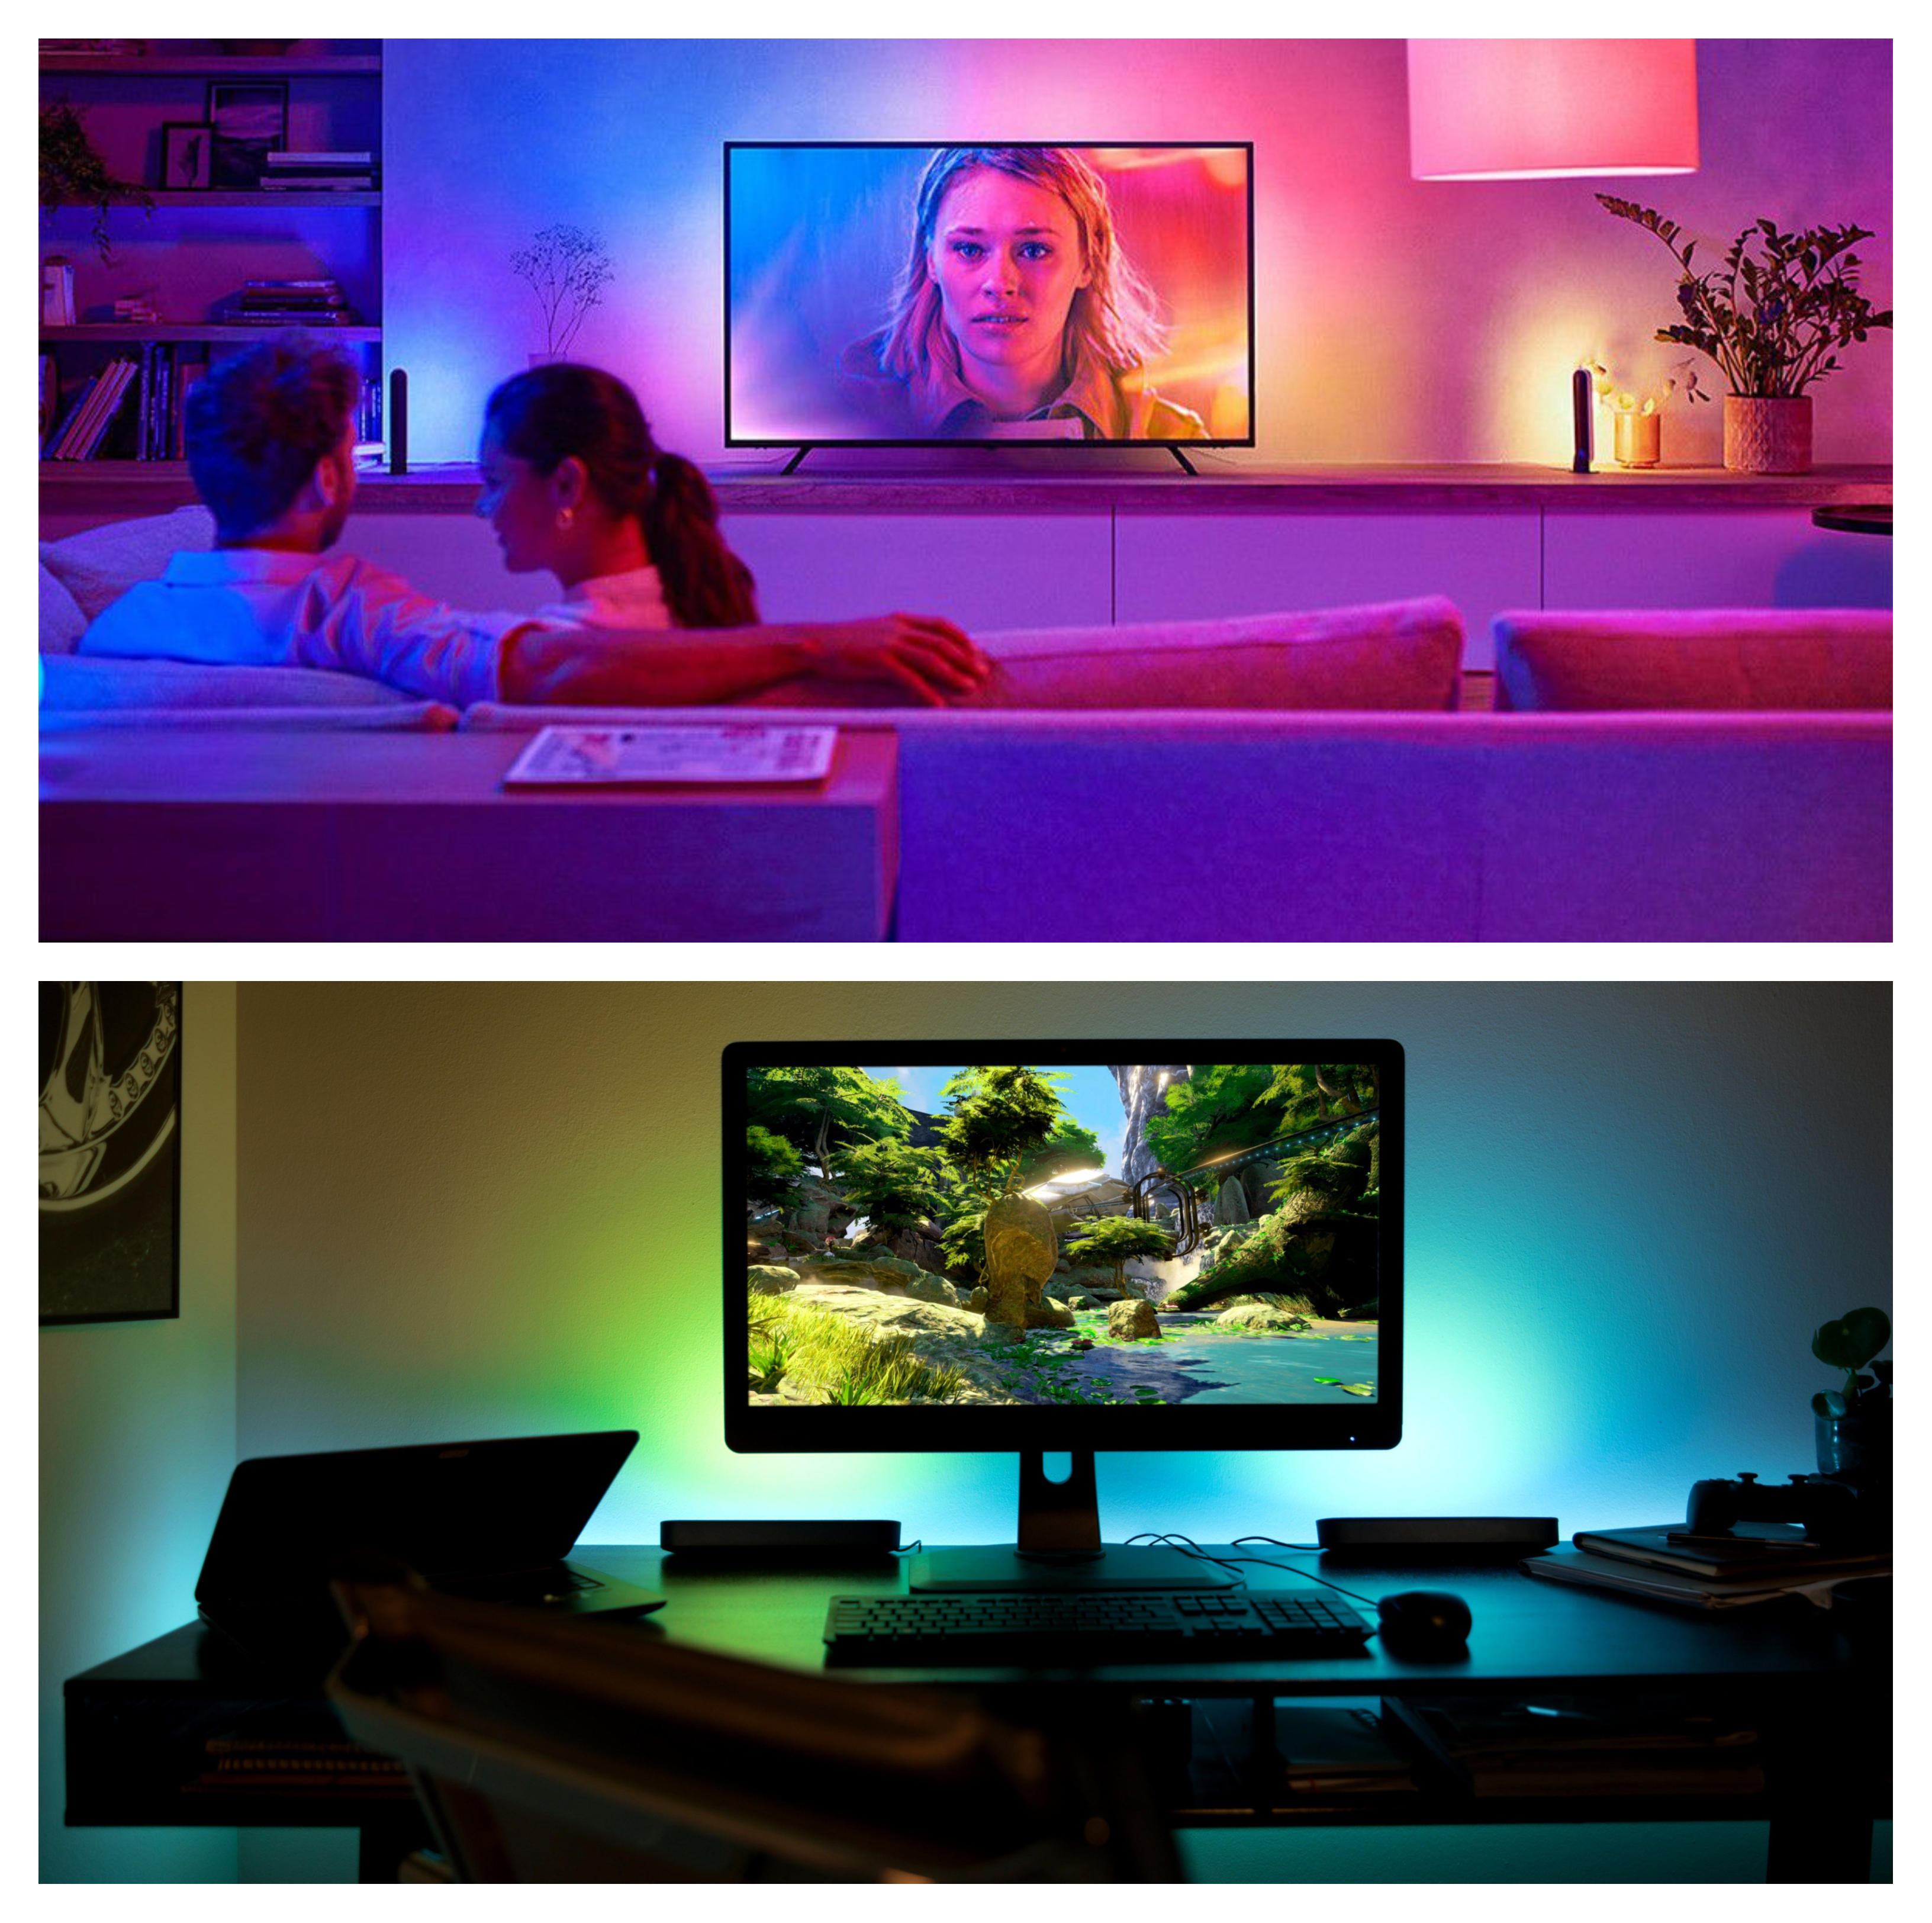 Svítidlo Philips Hue Play pak podporuje až 16 miliónů barevných odstínů a 50 000 odstínů studeného i teplého světla, čímž dokreslí atmosféru daného filmu, seriálu nebo hry.